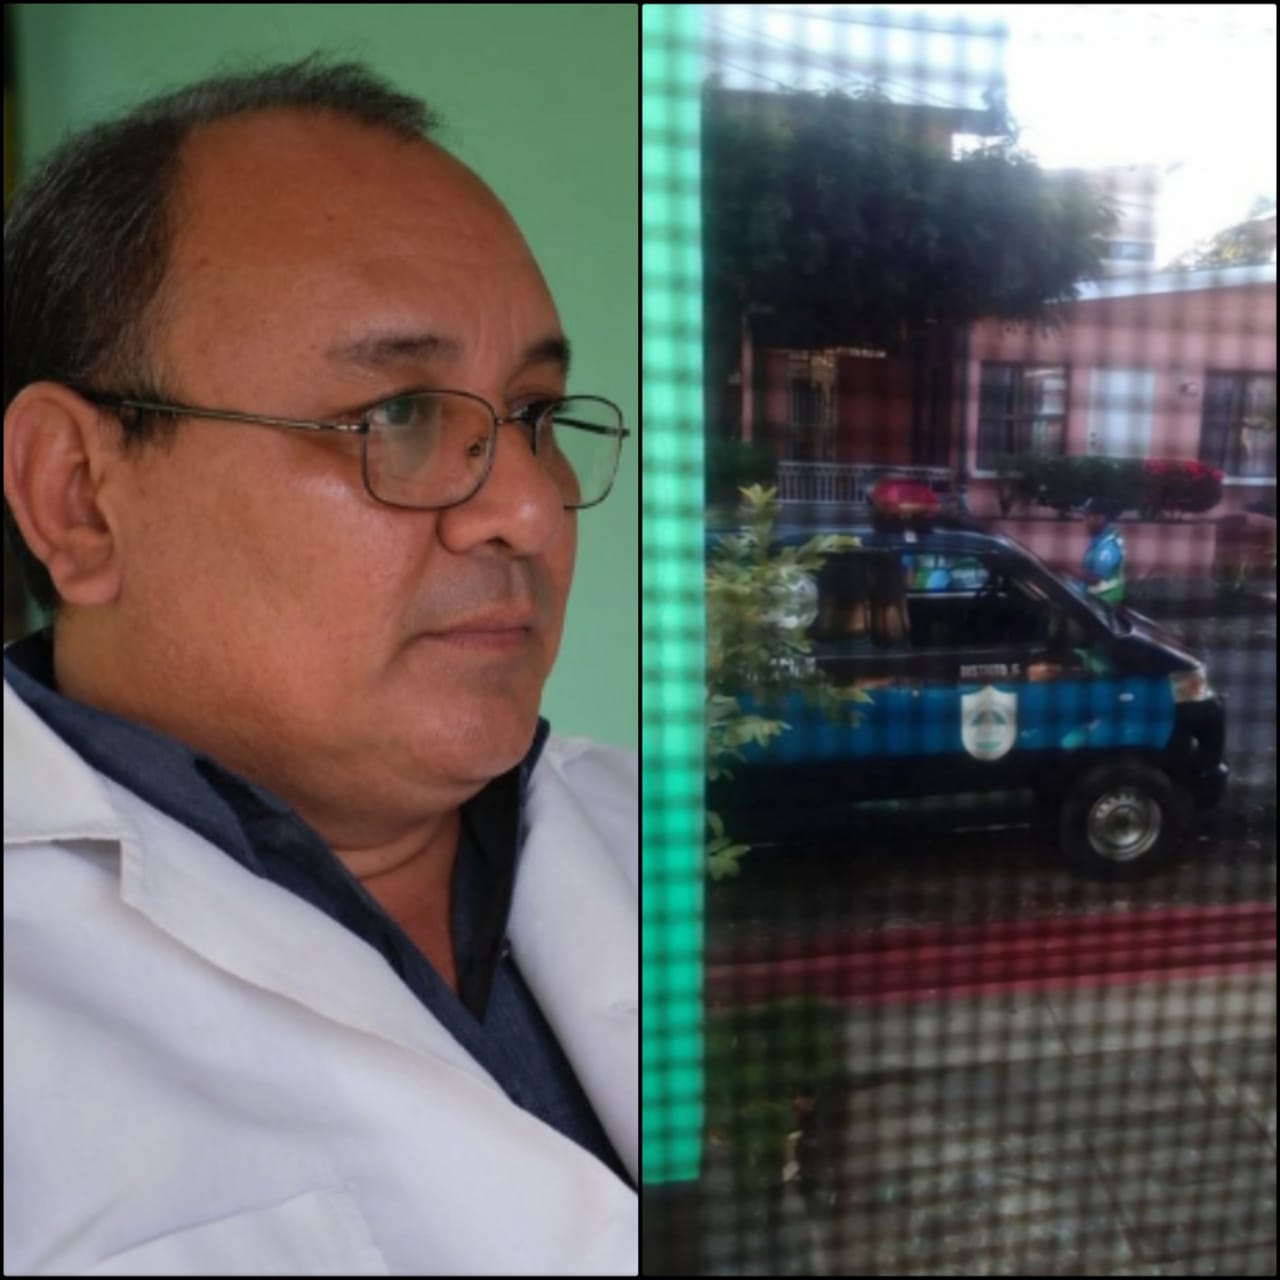 «Es para que dejés de estar jodiendo al gobierno de Daniel Ortega», fue la respuesta de un policía al ser encarado por el doctor Borge